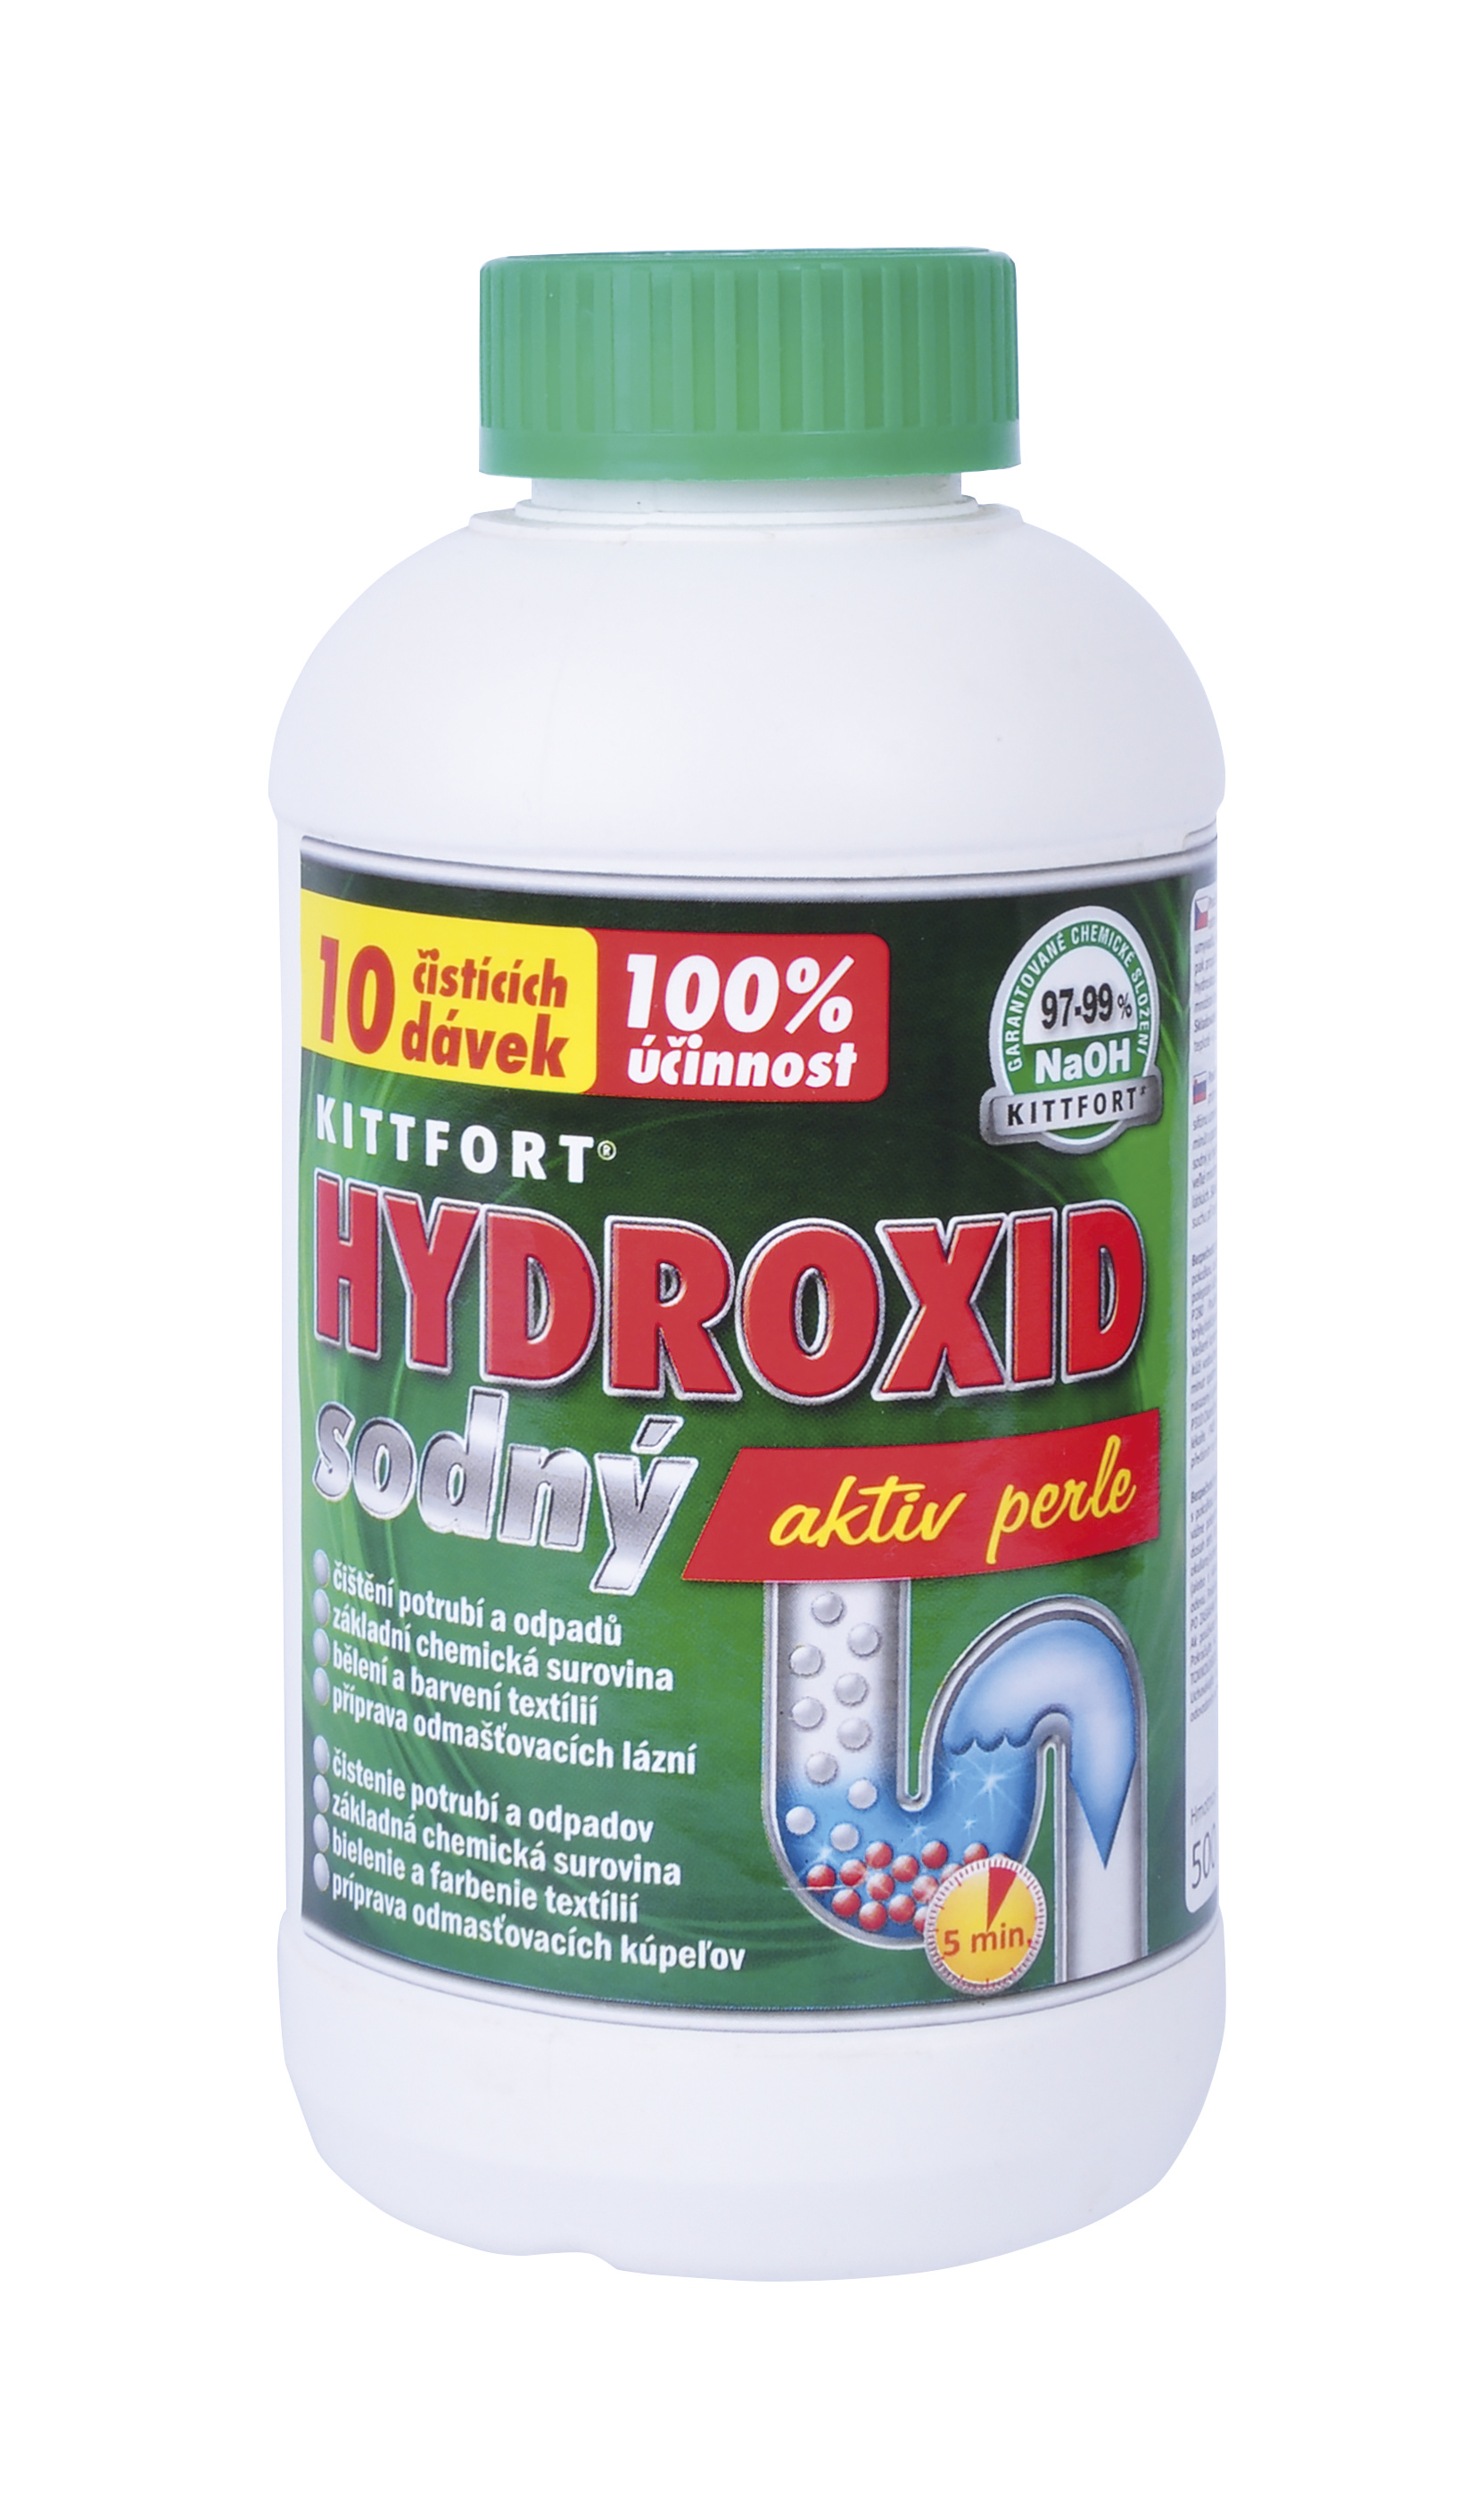 Hydroxid sodný 0,5 kg